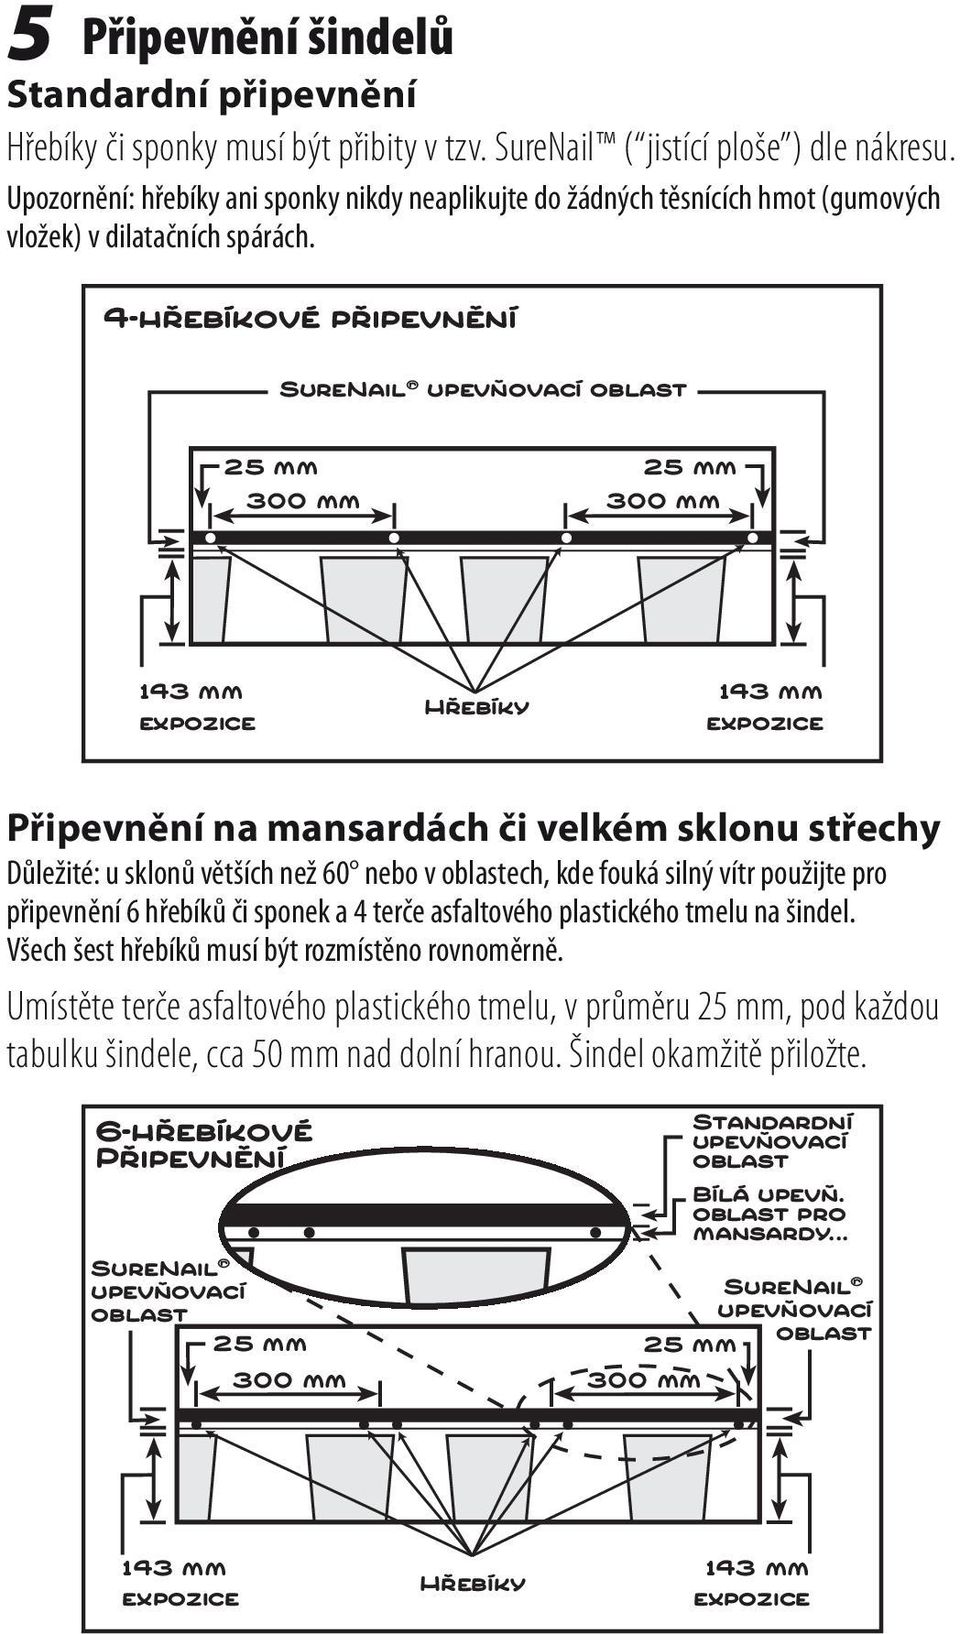 4-hřebíkové připevnění SureNail upevňovací oblast 25 mm 300 mm 25 mm 300 mm expozice Hřebíky expozice Připevnění na mansardách či velkém sklonu střechy Důležité: u sklonů větších než 60 nebo v